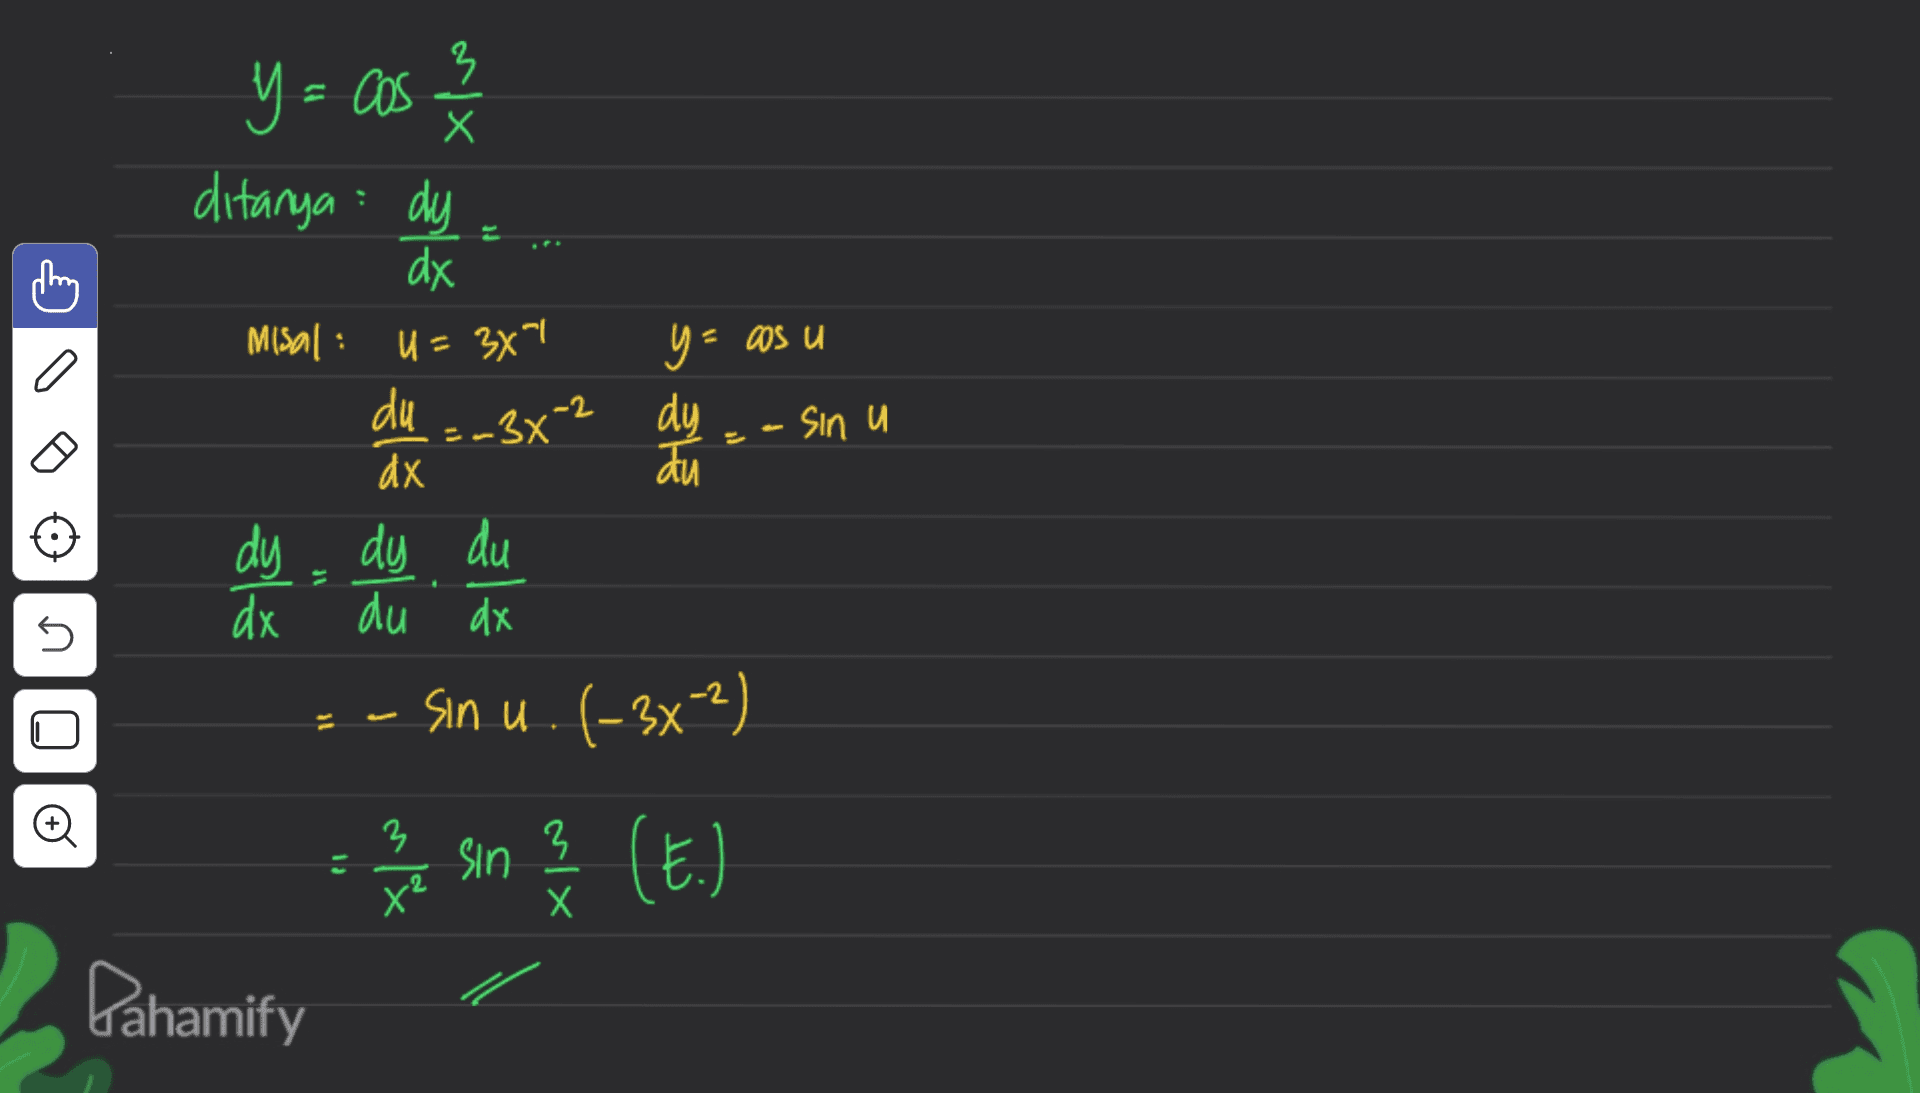 y = cos ax ditanya : dy dx Misal : . U = 34" n 50 - 9 du =-3x² -2 пр Sin и 3 dx au dy dy du dx du dx sin u. (-3x-2) U 11 n o 11 (17) 2 t us 2 Lahamify 